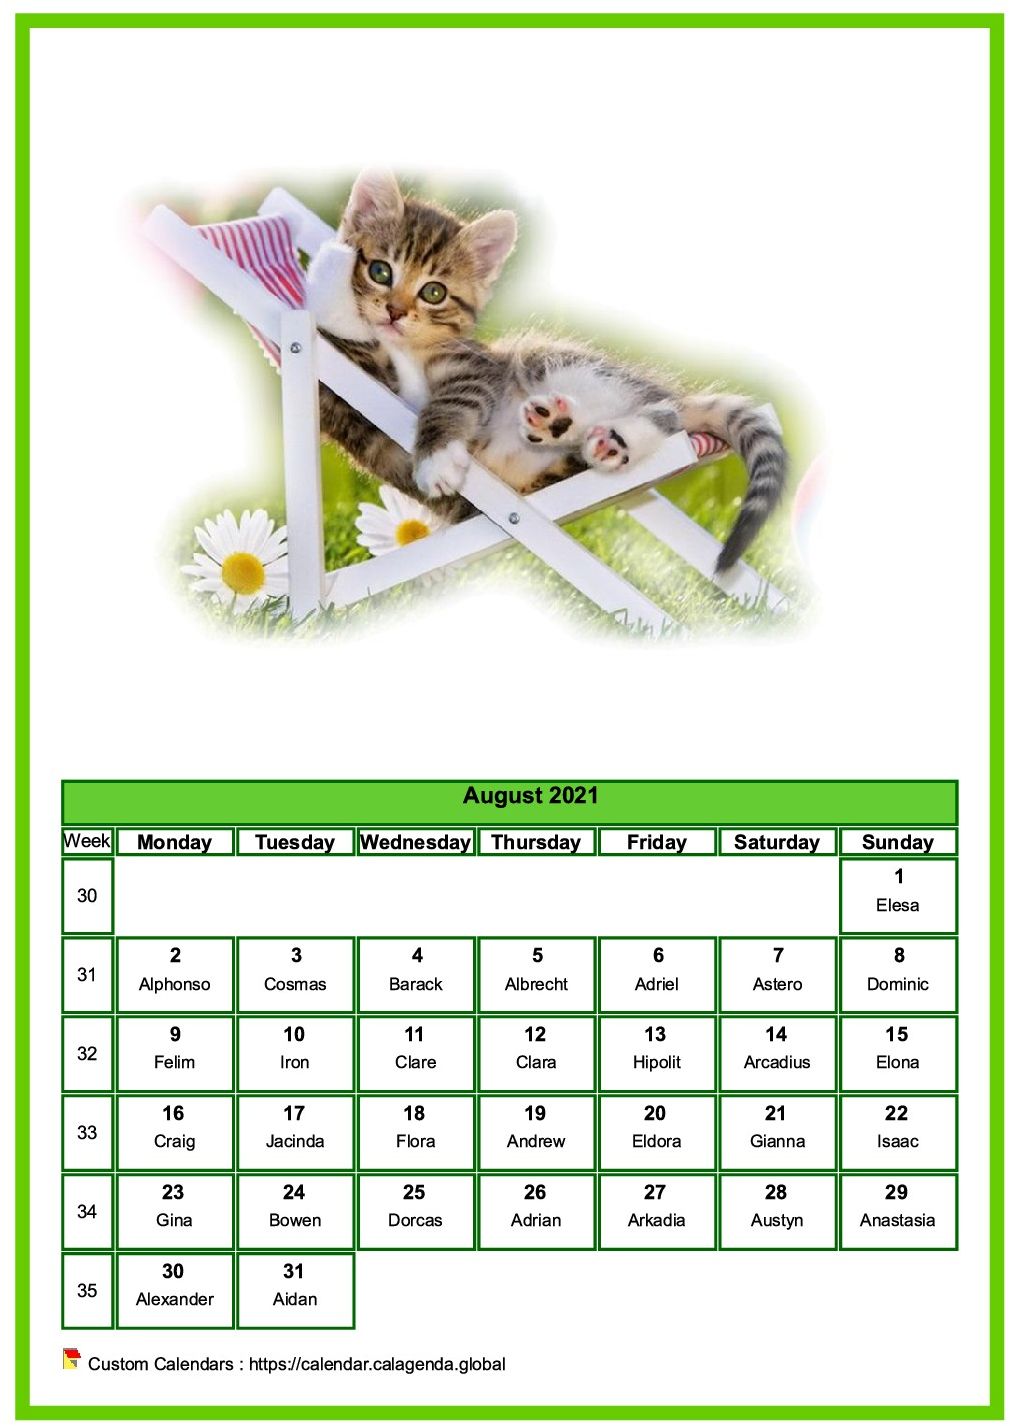 Calendar August 2021 cats